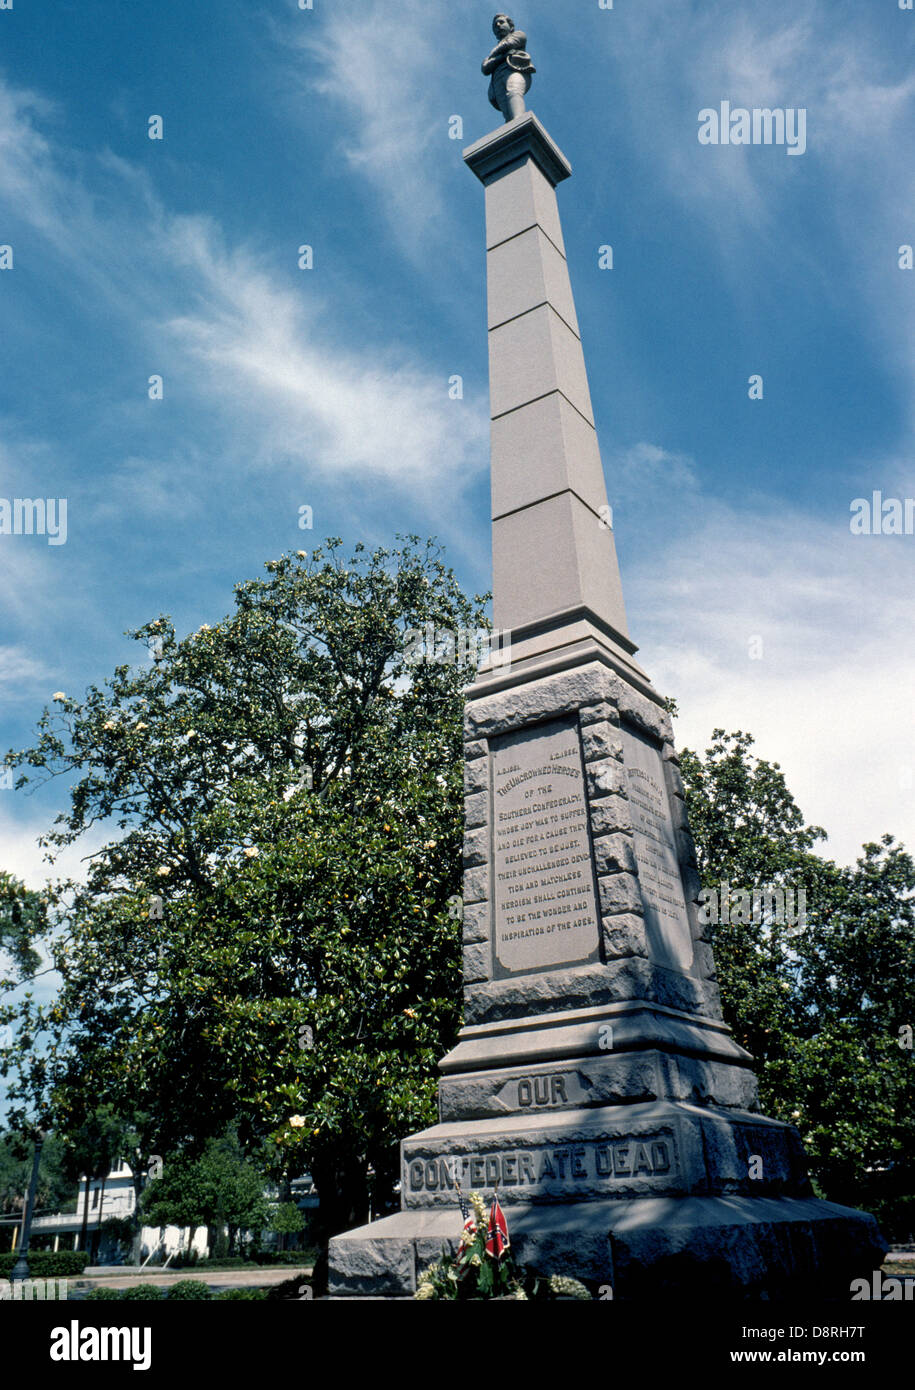 Les soldats confédérés ont été honorés par un monument en granit érigé en 1891 à Lee Square, un parc commémoratif de la guerre de Sécession dans le centre-ville de Pensacola, en Floride, aux États-Unis. Banque D'Images